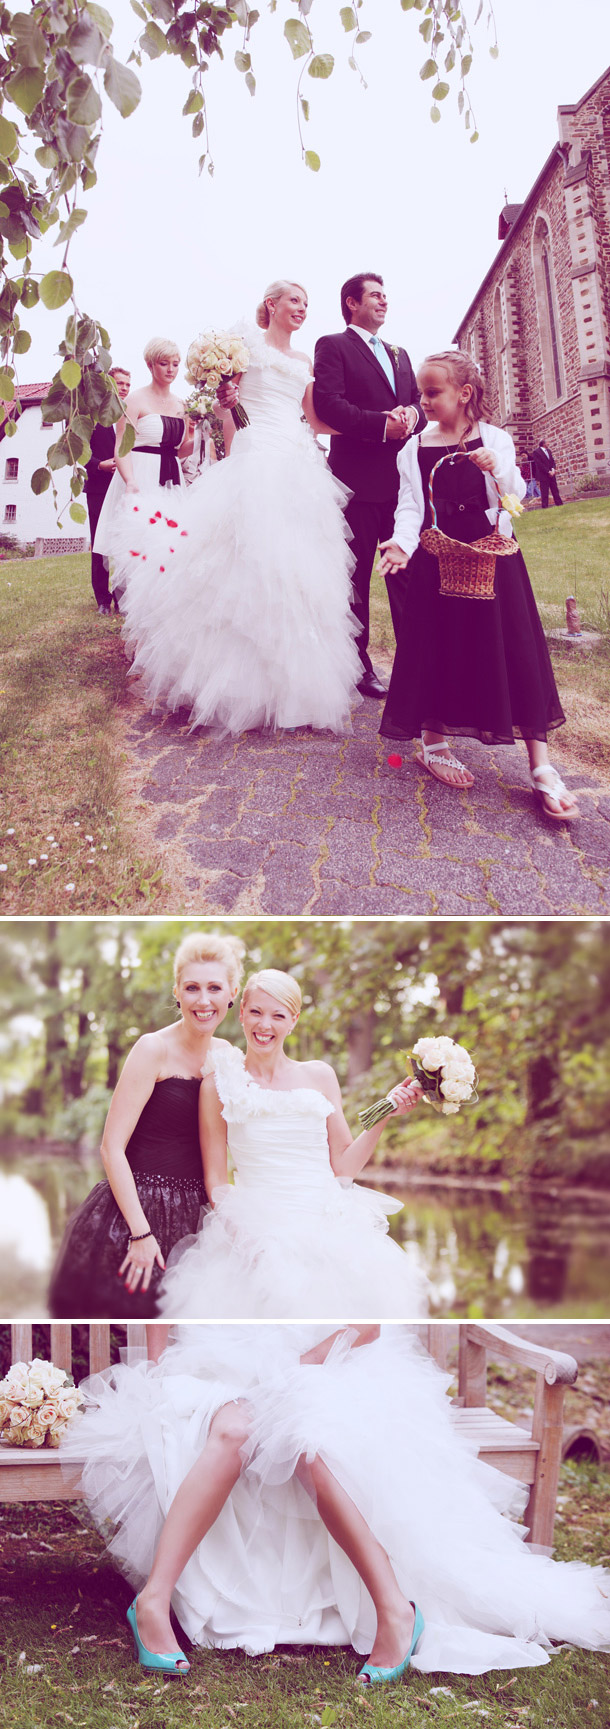 Jenny und Marcs Hochzeit bei Doreen Kuehr Fotografie